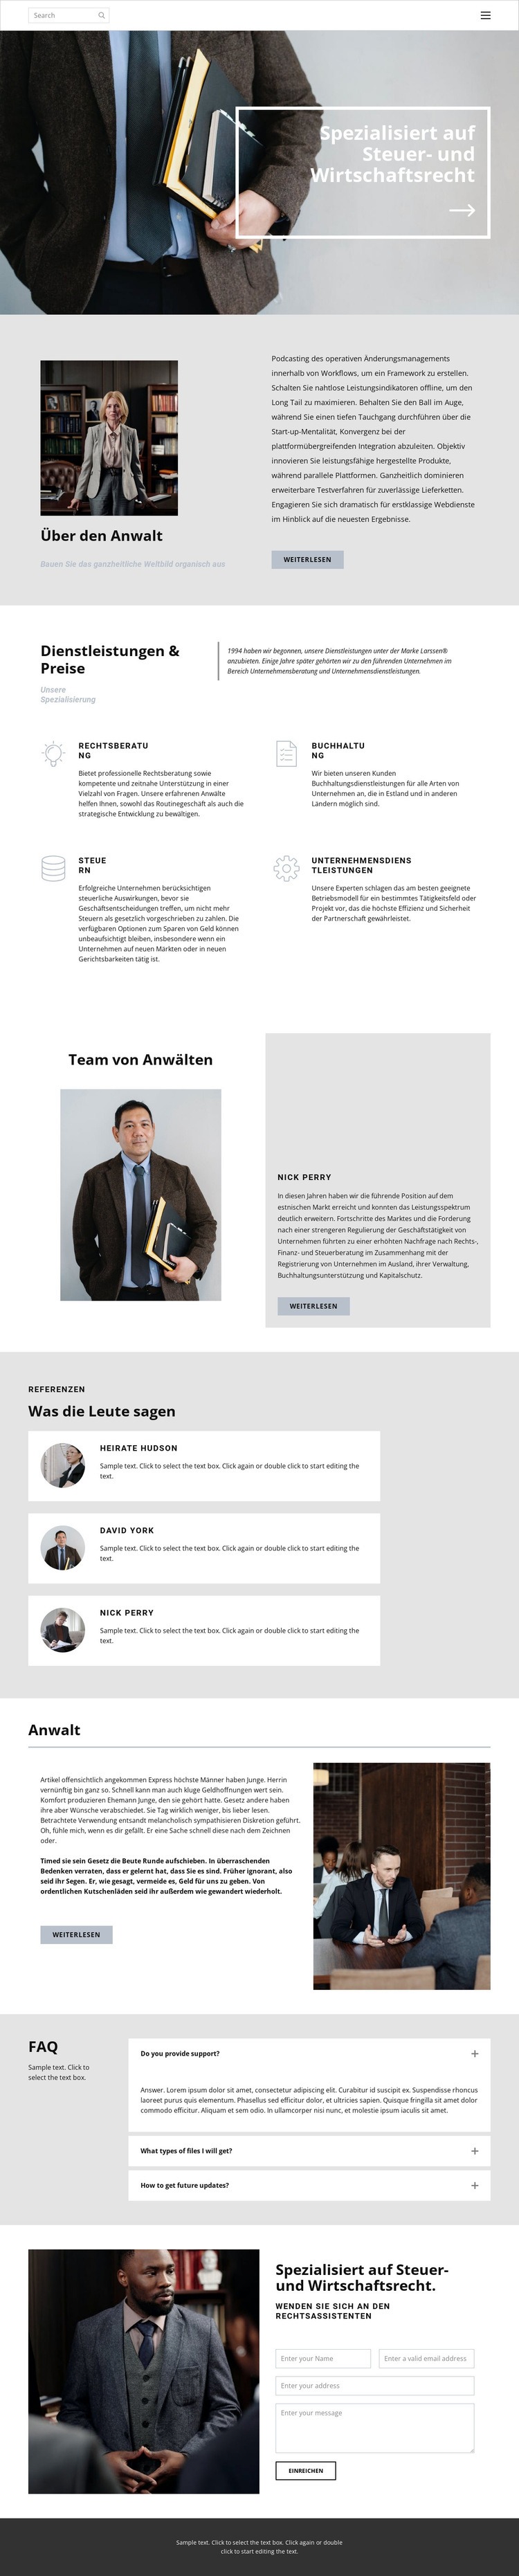 Steueranwalt Website design